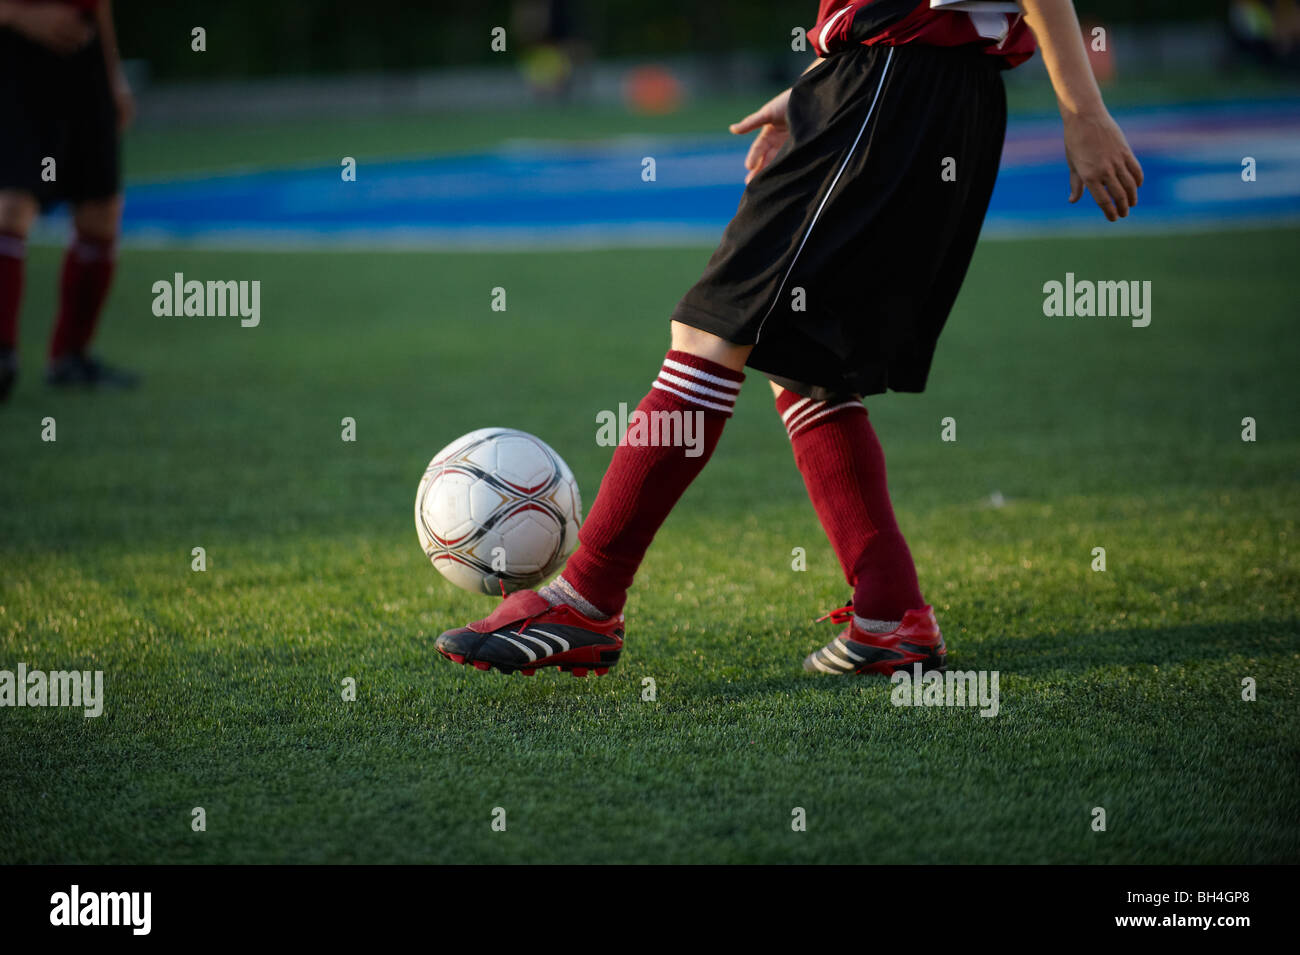 Young boy kicking ball avant match de football Banque D'Images